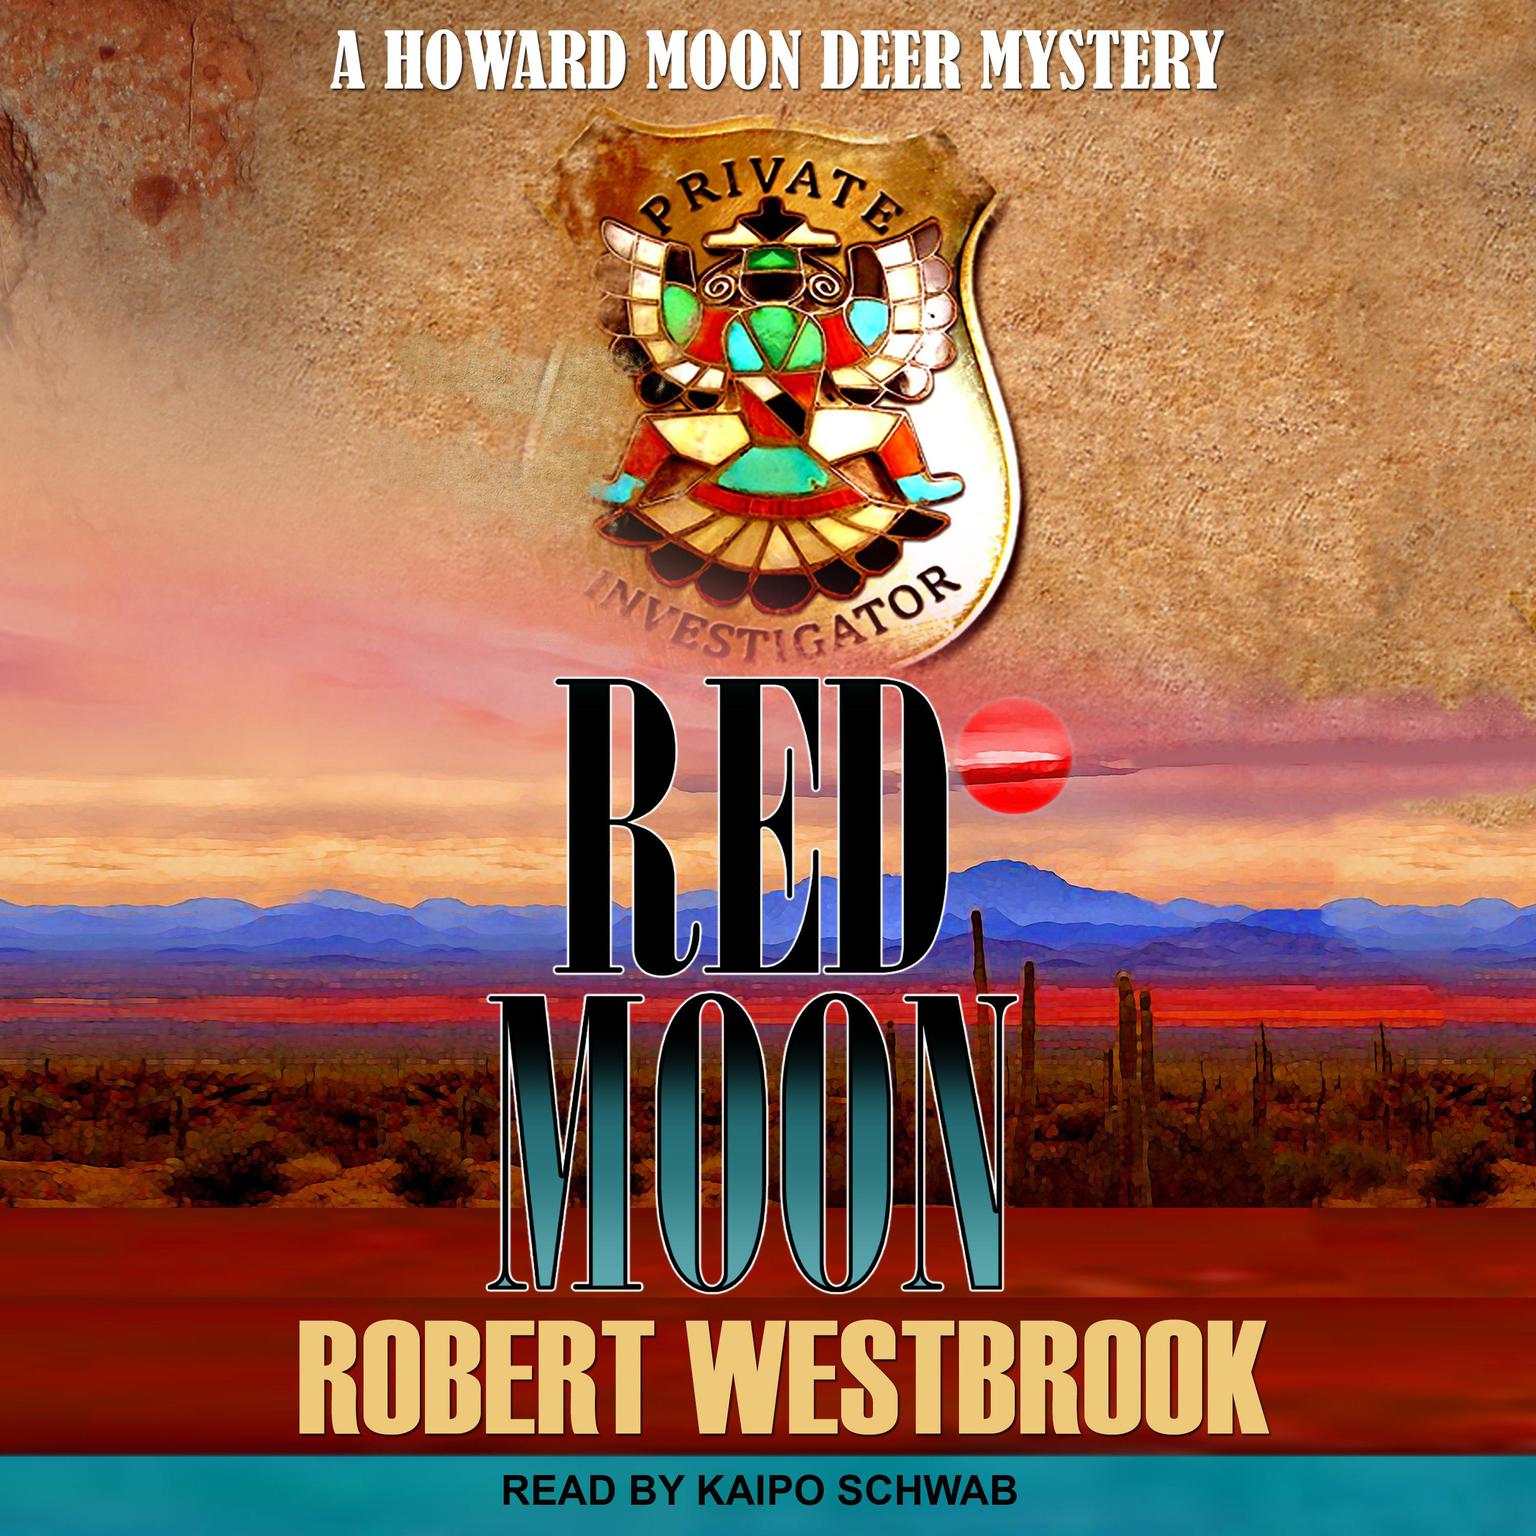 Red Moon Audiobook, by Robert Westbrook